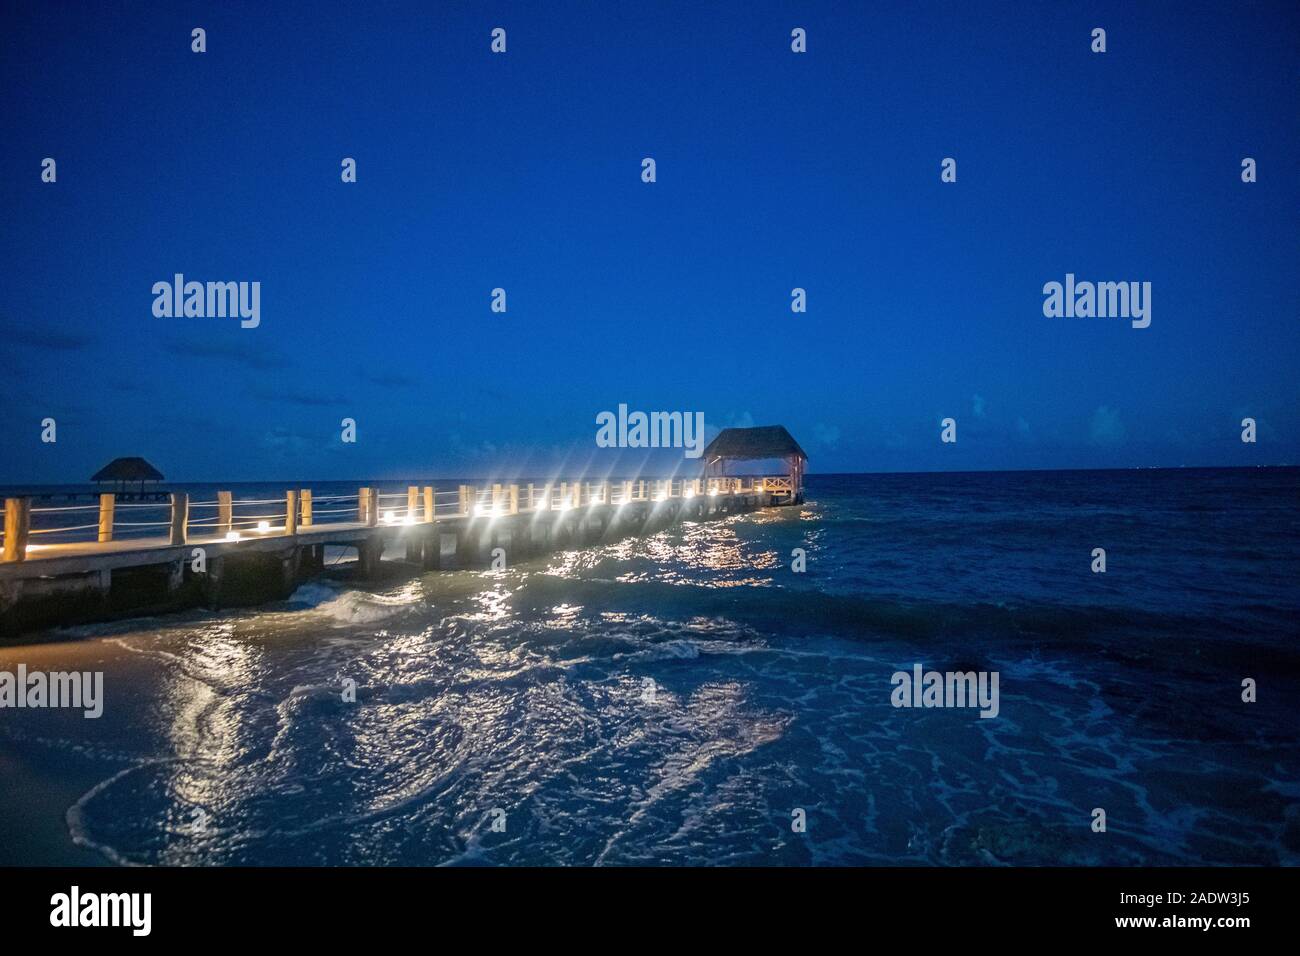 Passerelle en bois allumé en mer des Caraïbes par nuit Banque D'Images